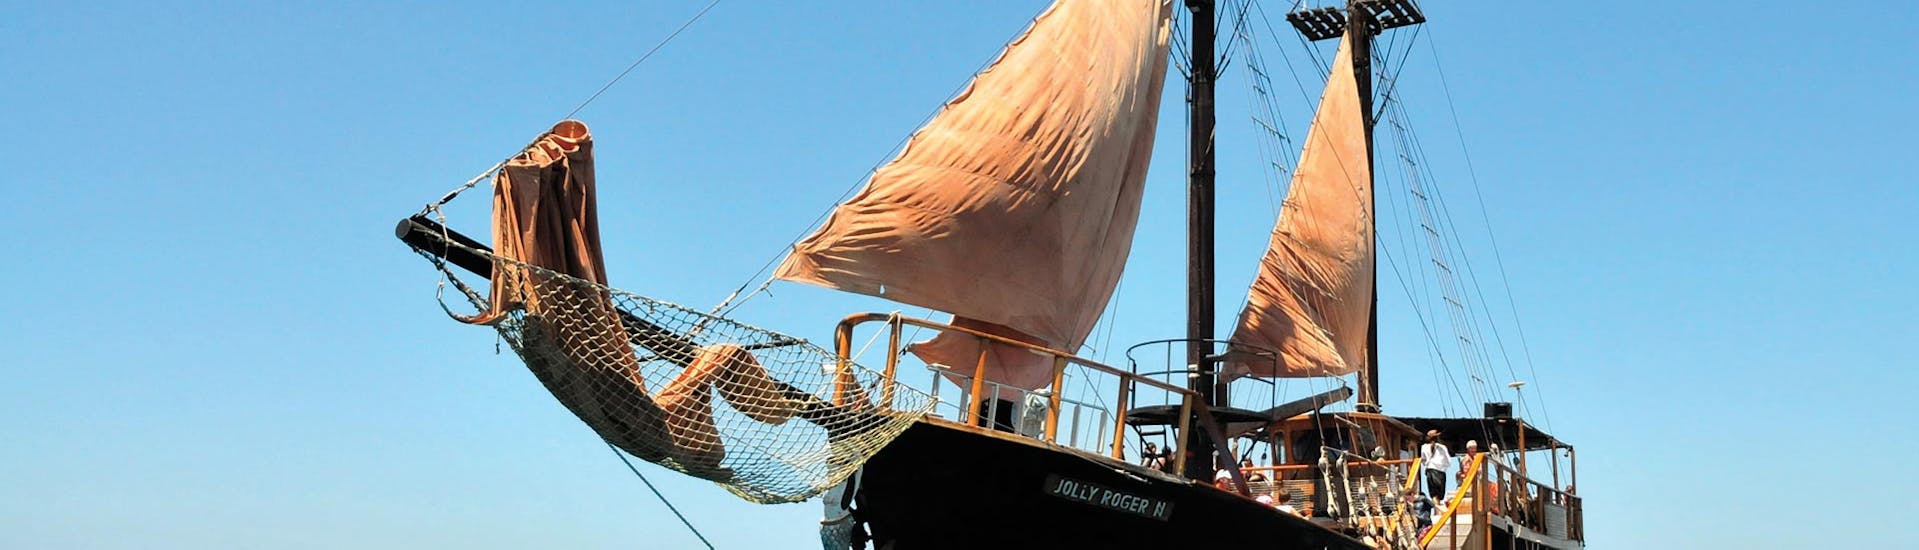 Vista del Jolly Roger, la embarcación que te llevará en barco pirata desde Pafos a la playa de Riccos.